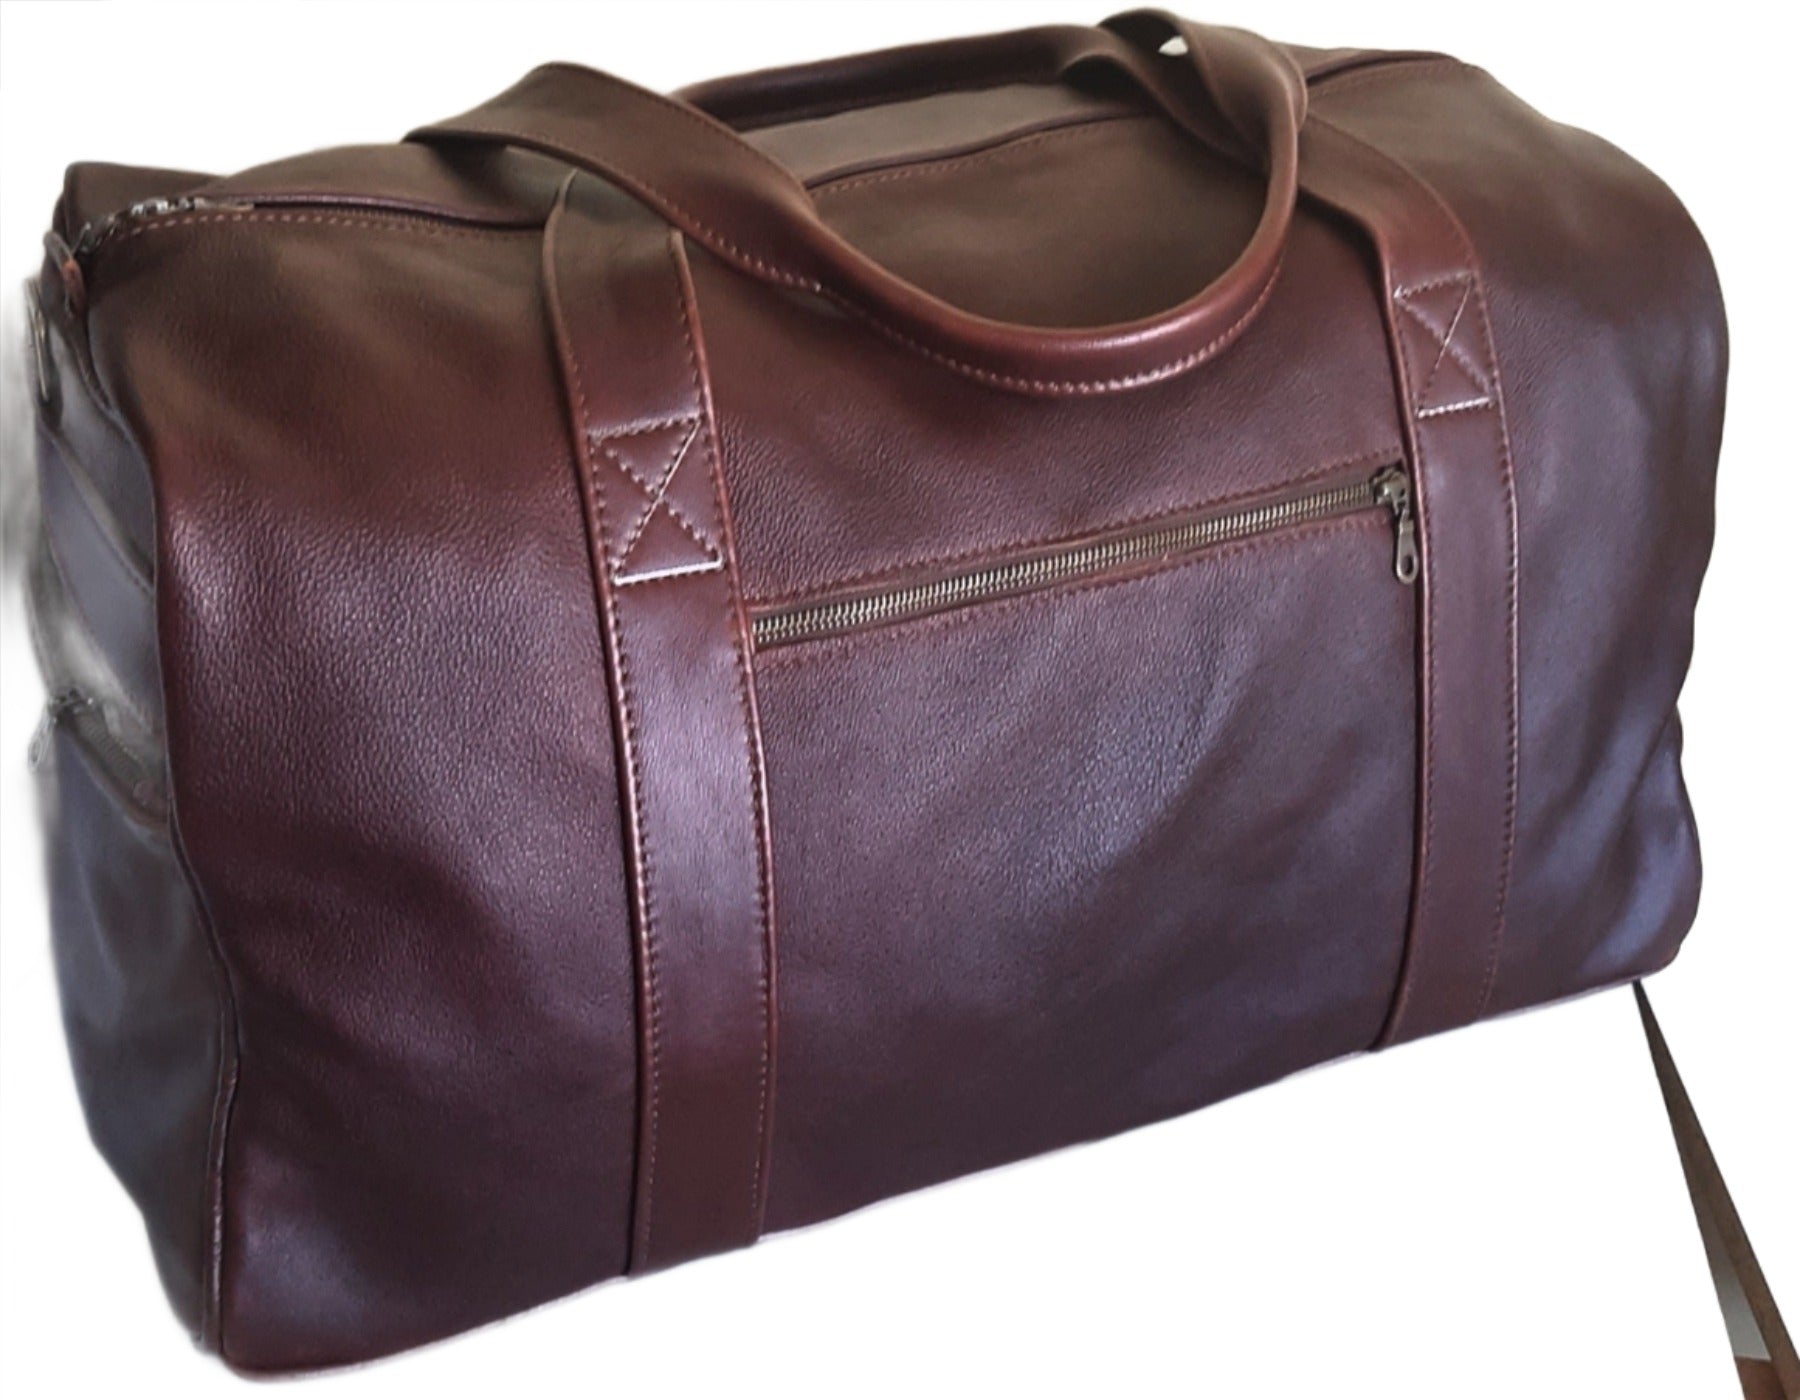 Masai leather travel bag XL - Cape Masai leather 